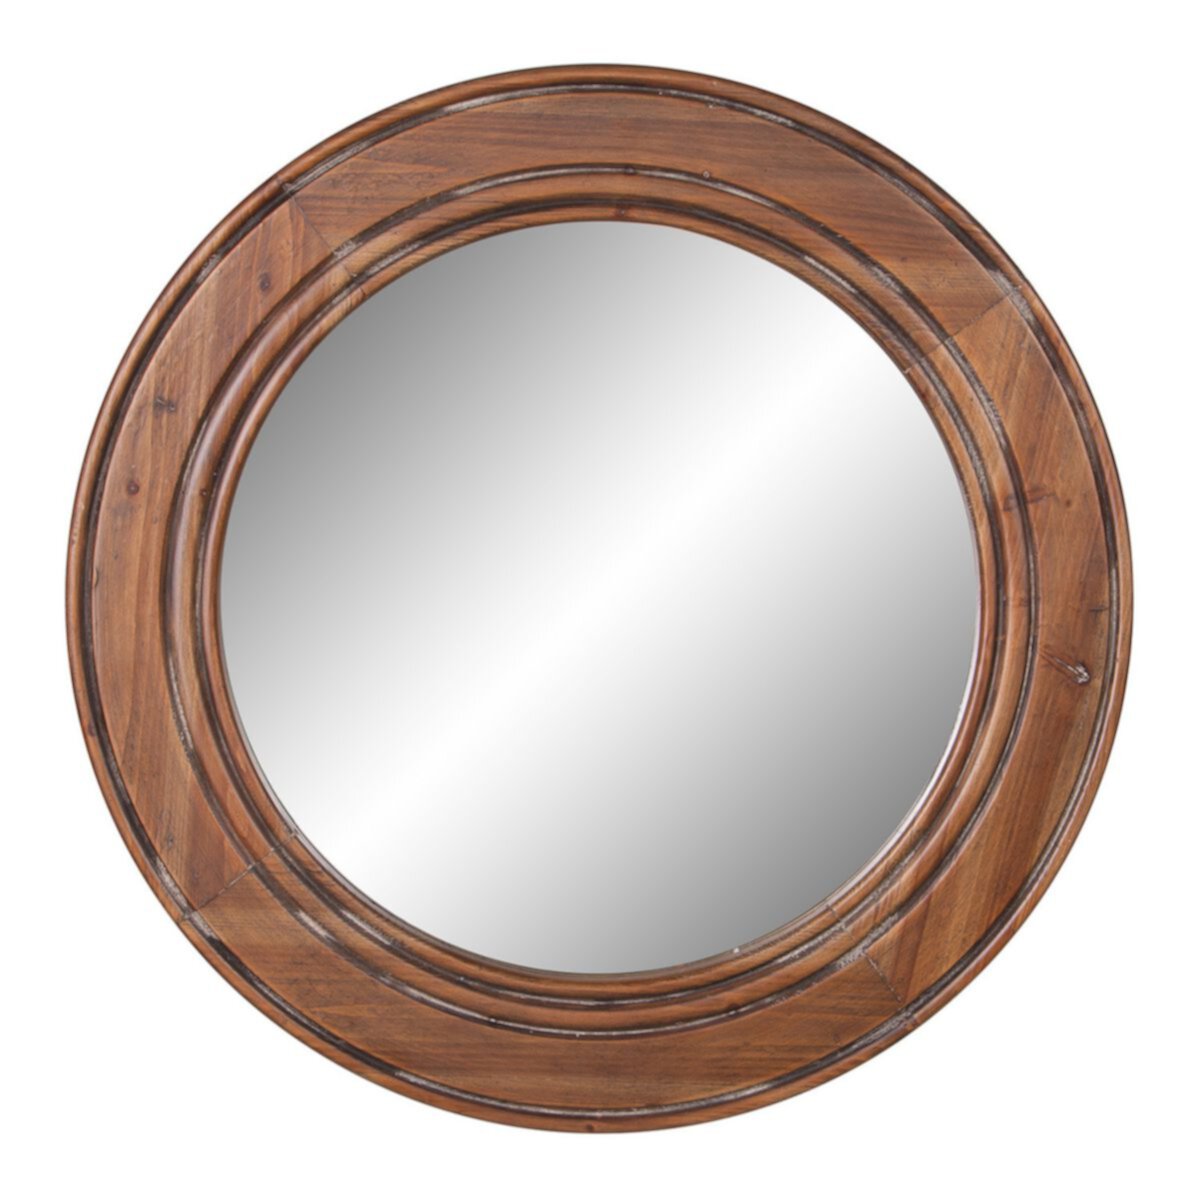 Большое круглое настенное зеркало с акцентом из мелиорированной древесины Patton Patton